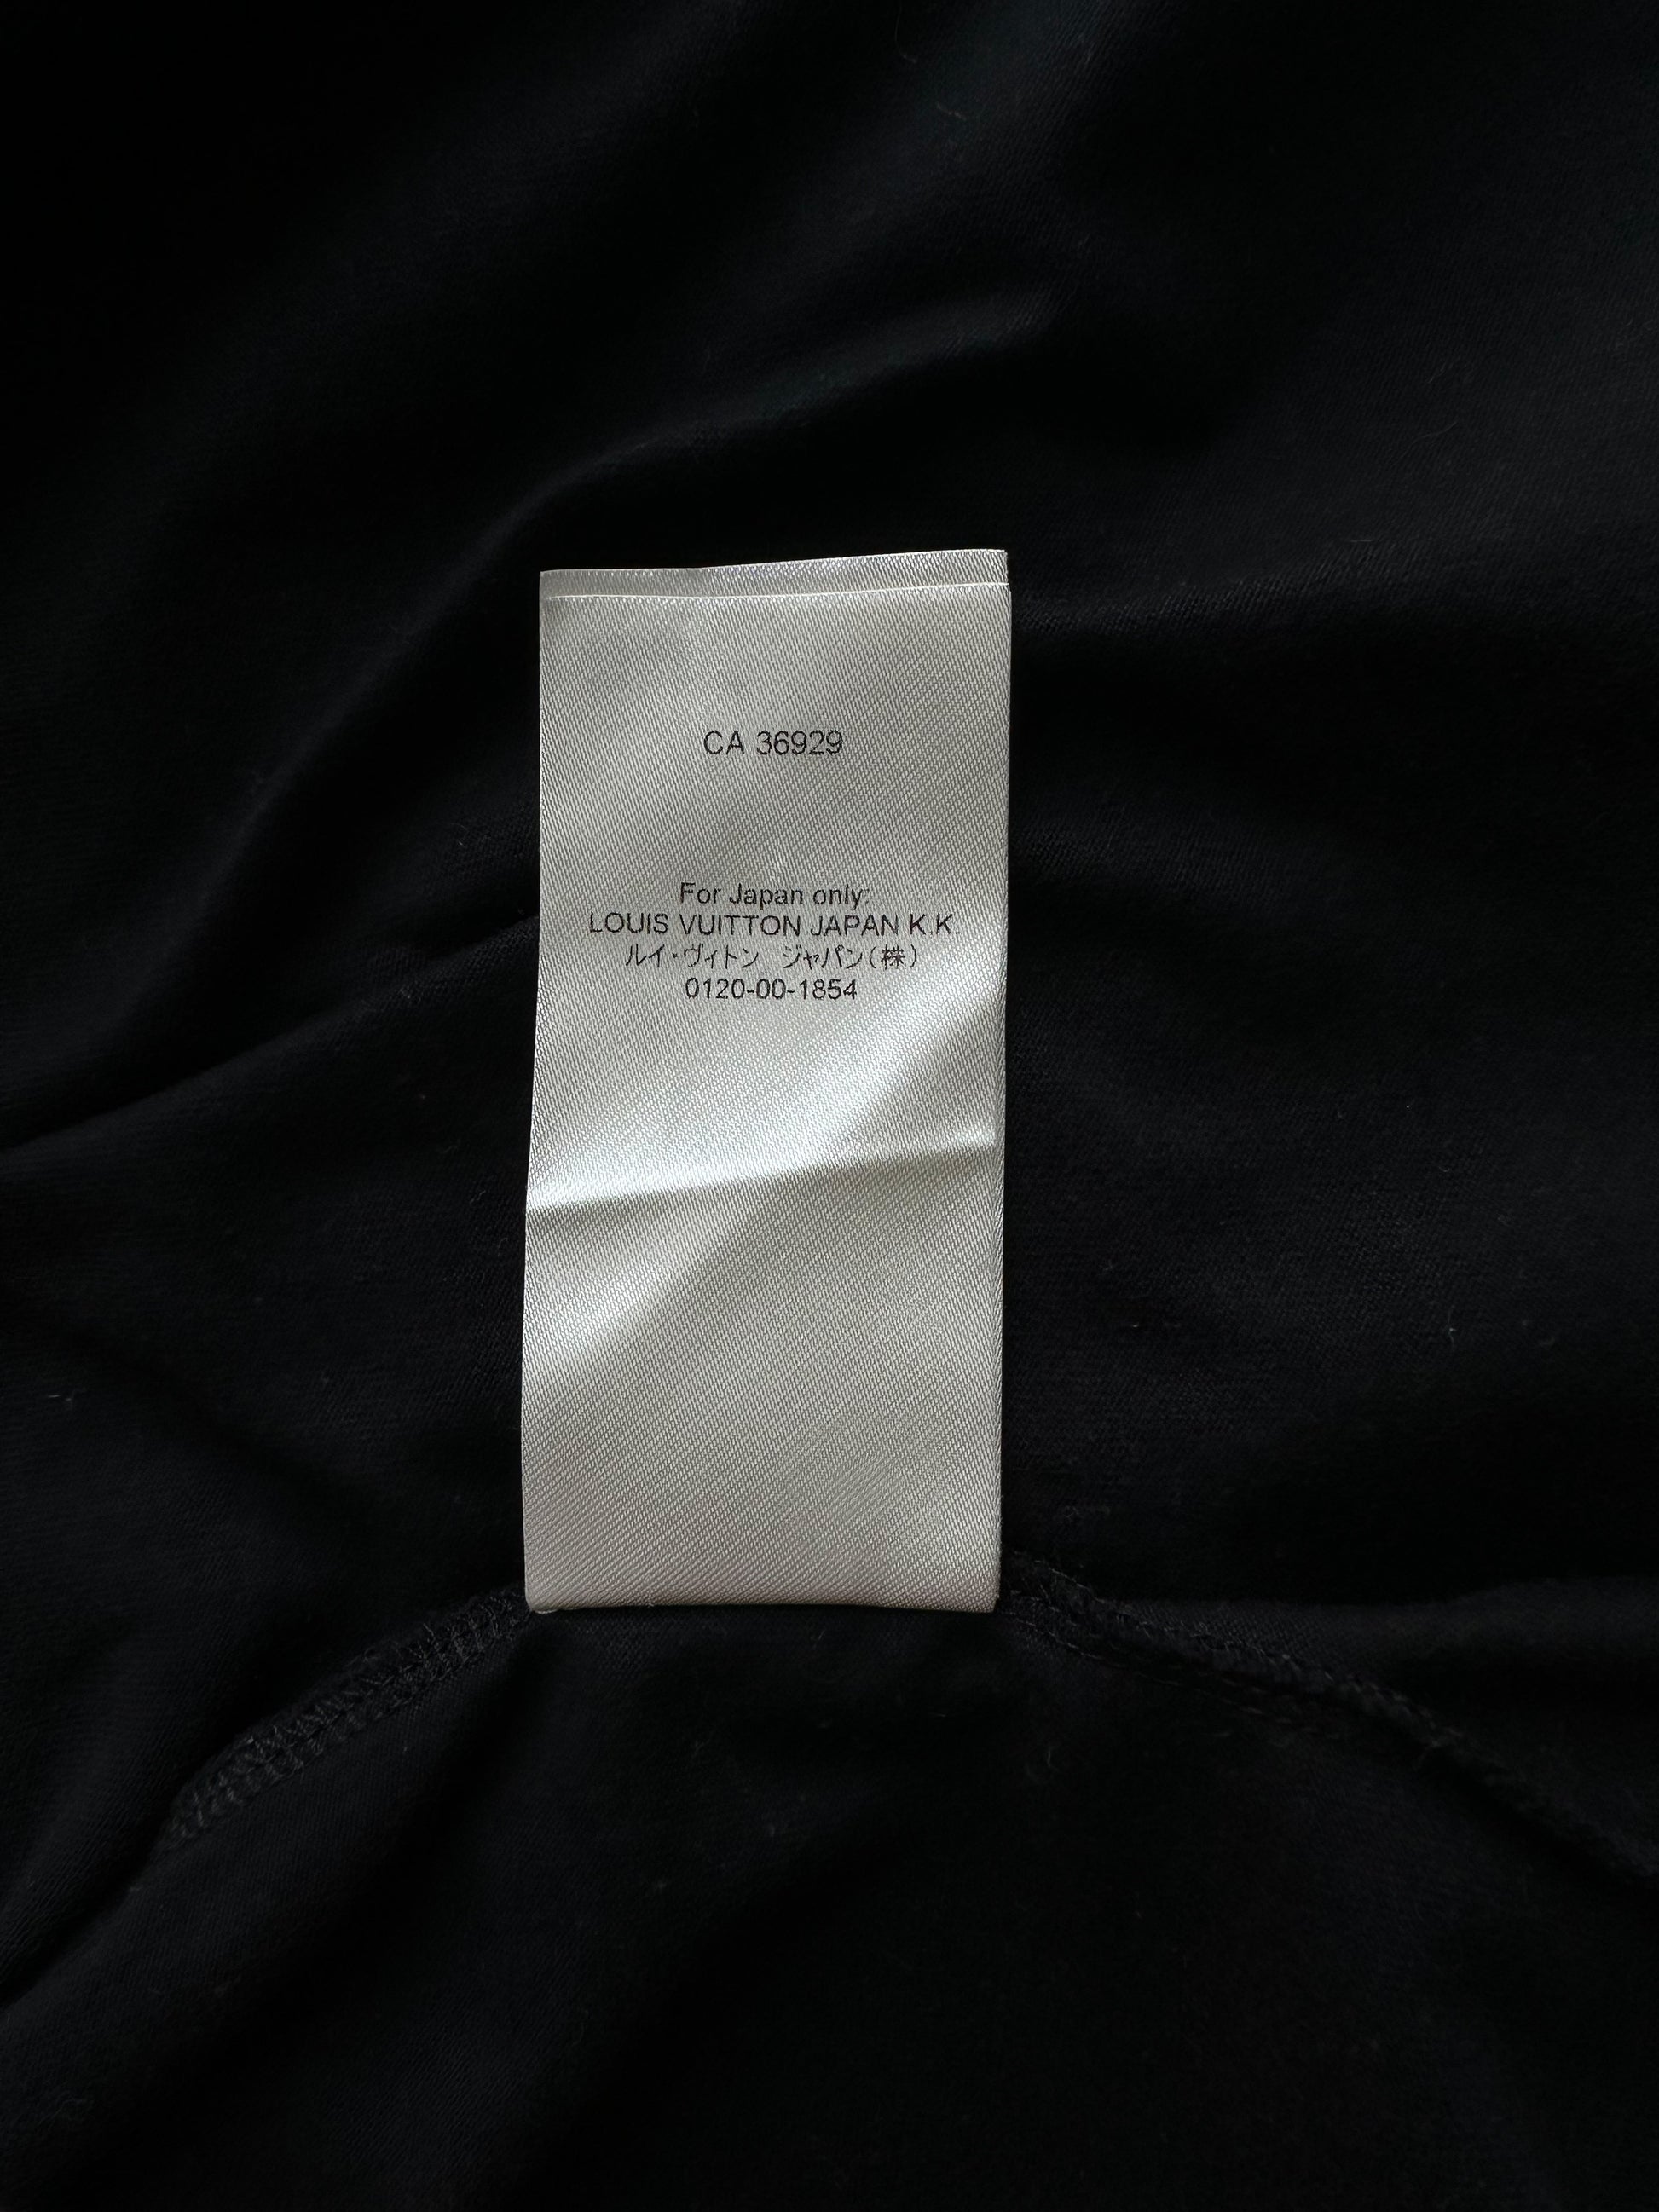 Louis Vuitton Black L.Vuitton Heat Reactive T-Shirt